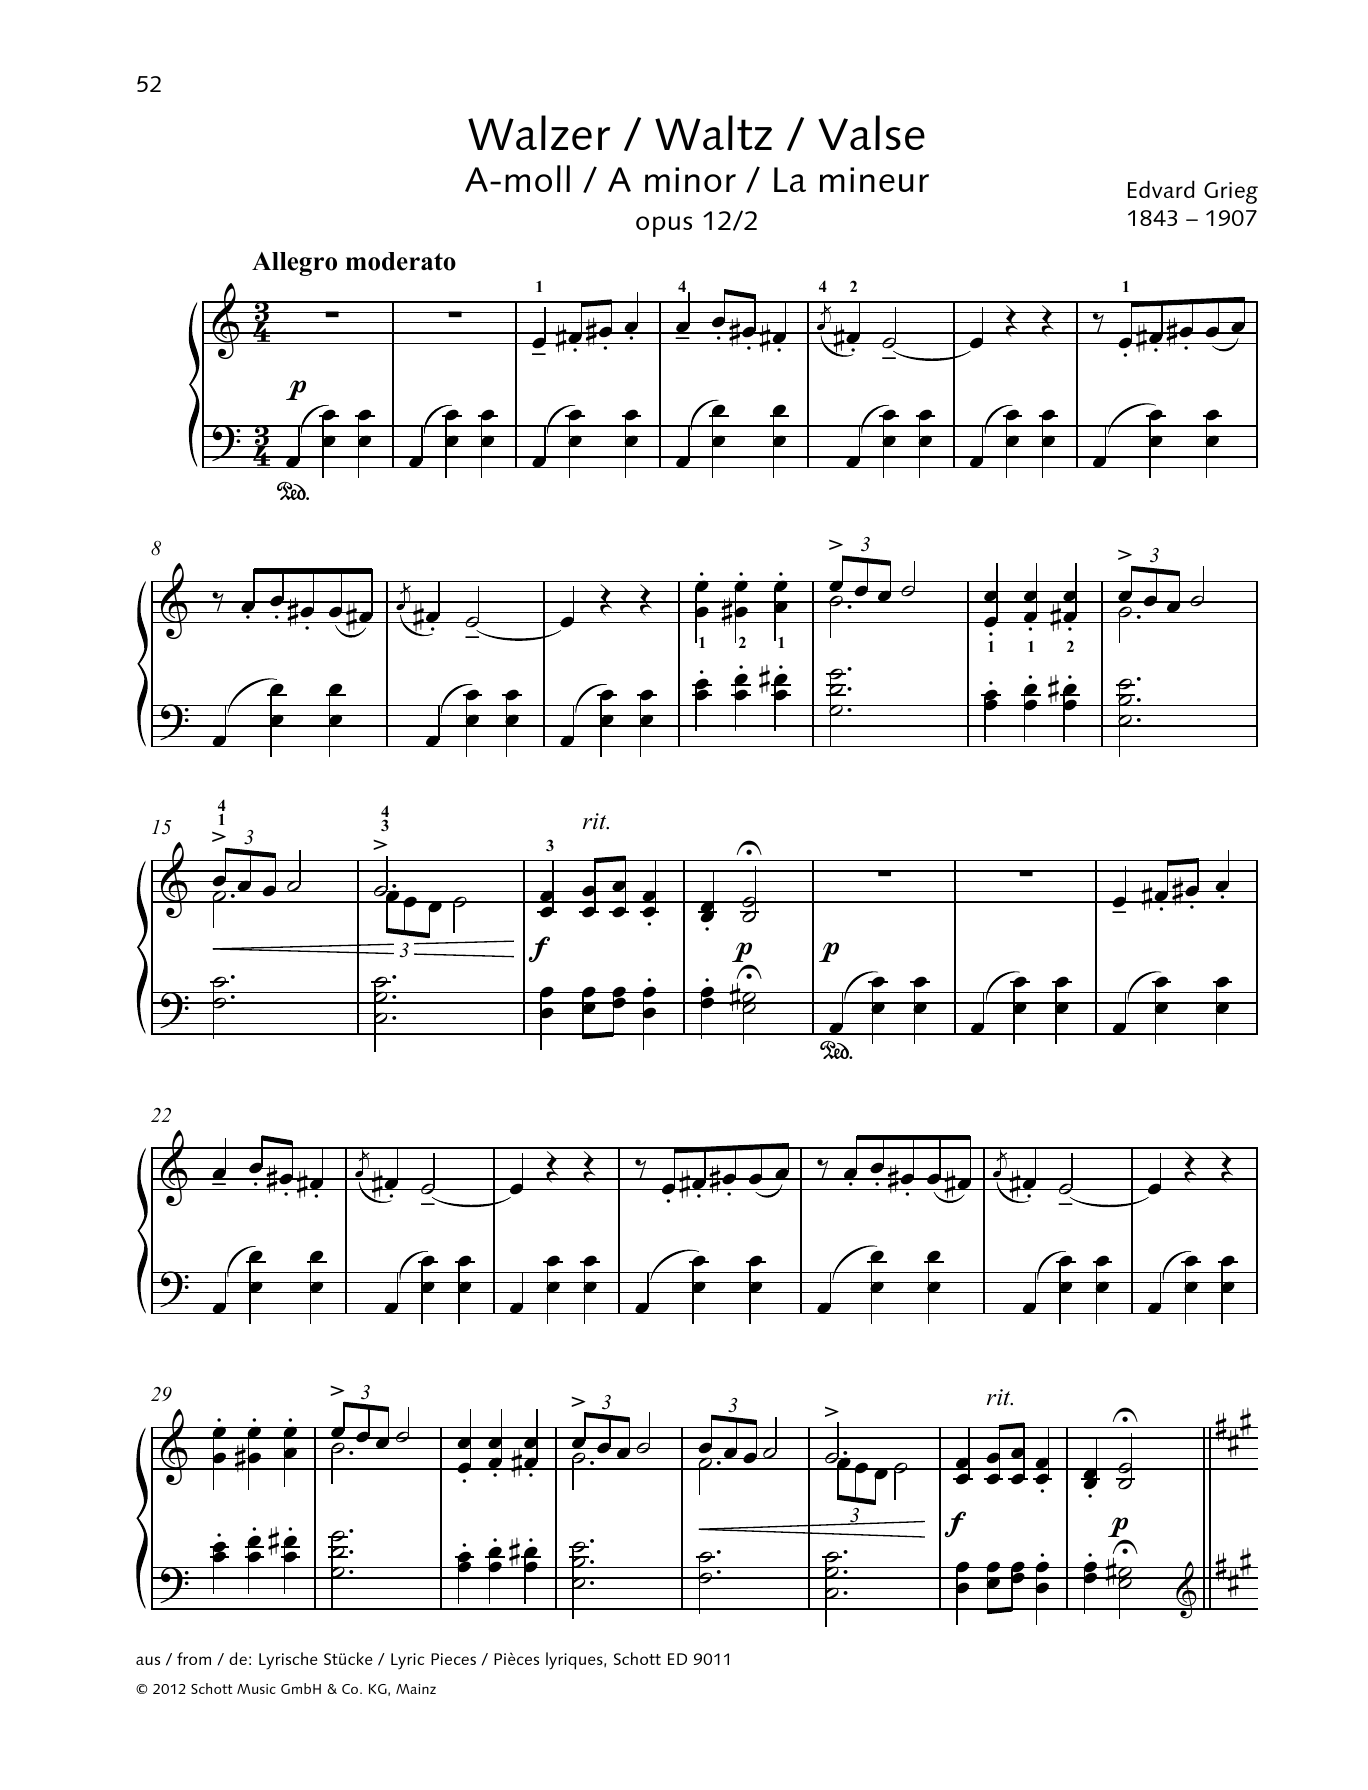 Download Edvard Grieg Waltz A minor Sheet Music